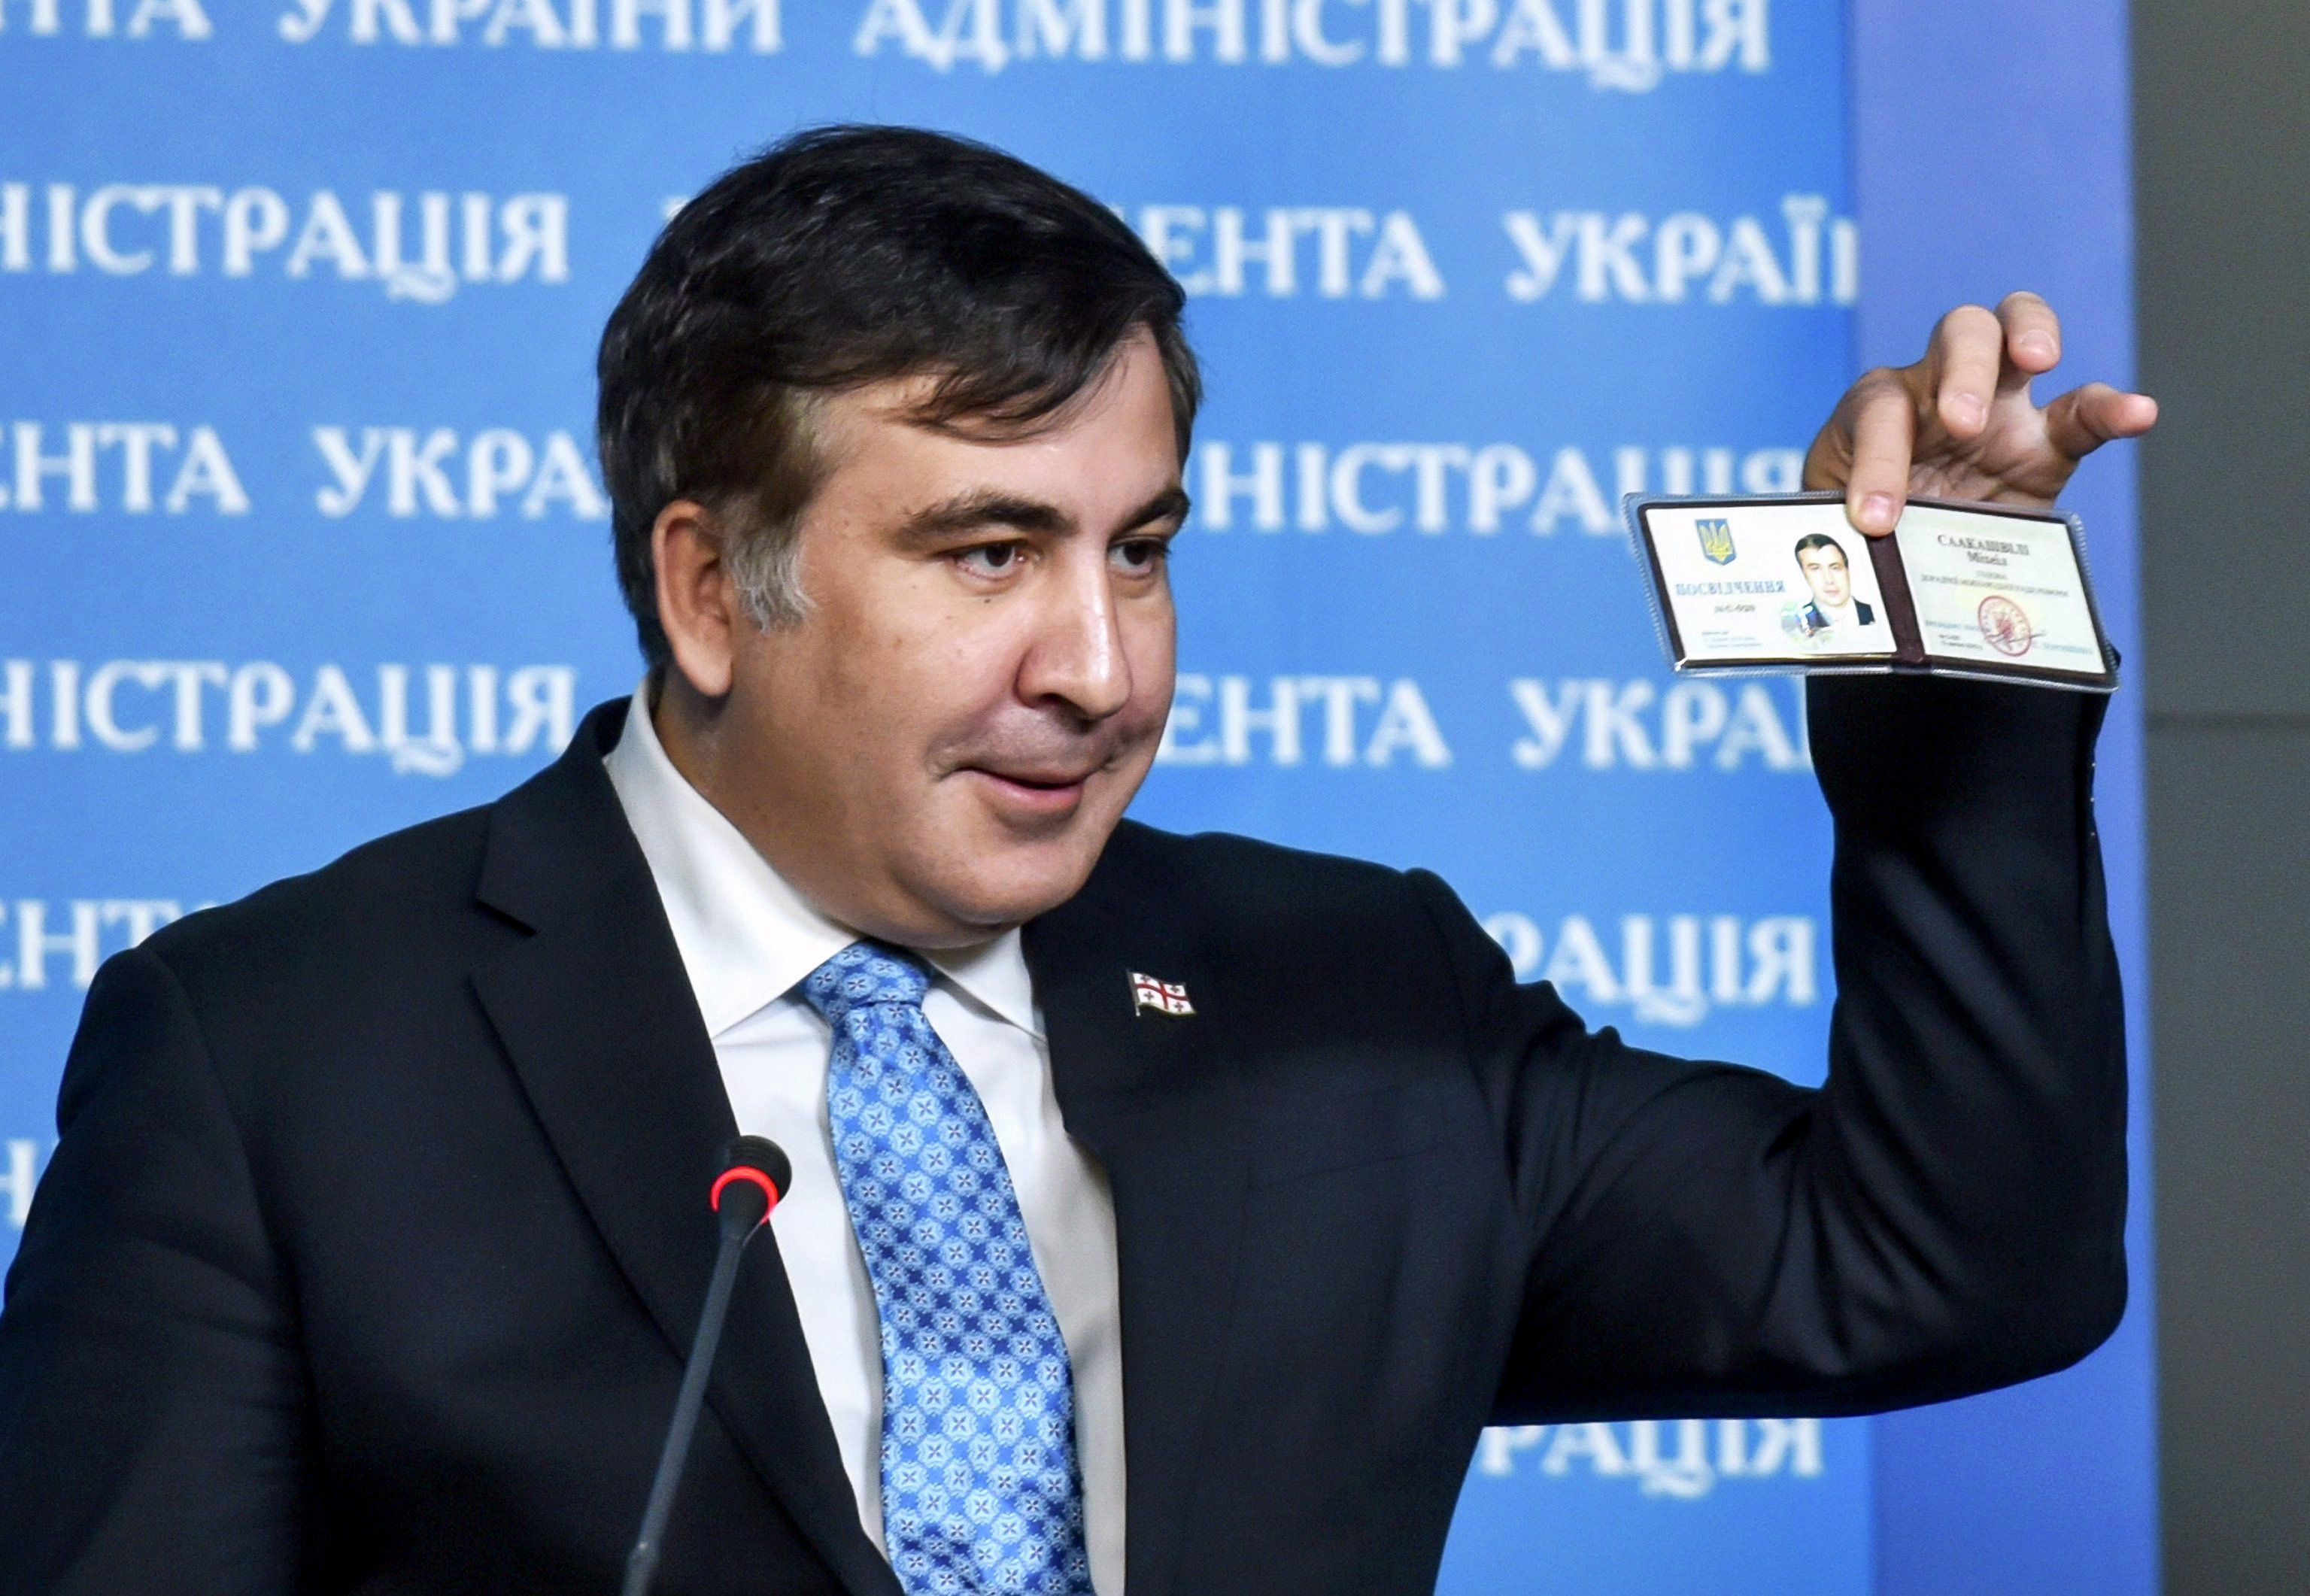 Суд с четвертой попытки признал непрерывное проживание Саакашвили в Украине